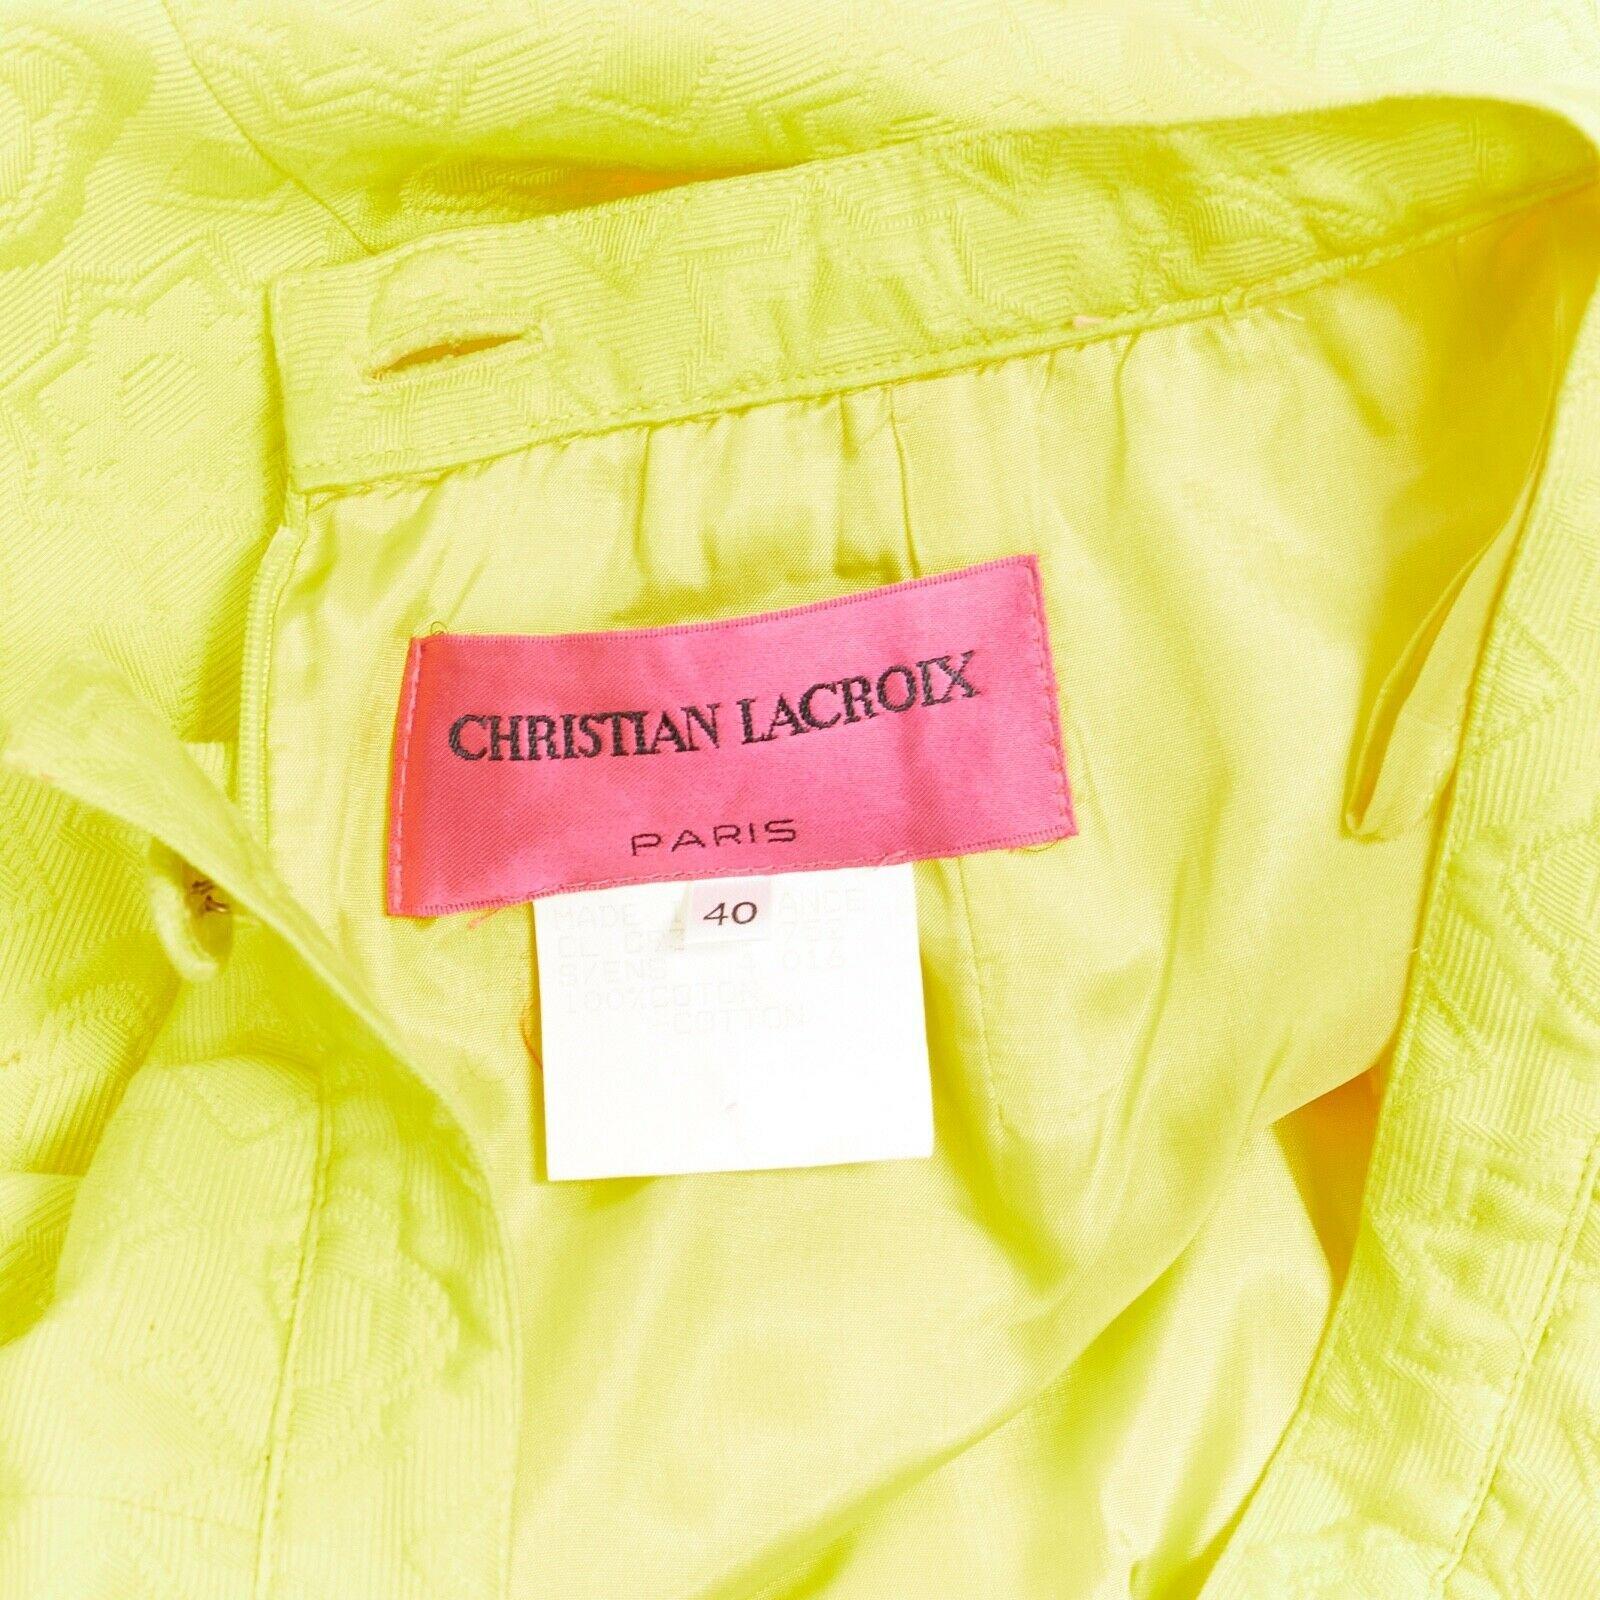 CHRISTIAN LACROIX yellow cotton floral jacquard black lace pencil skirt FR40 8